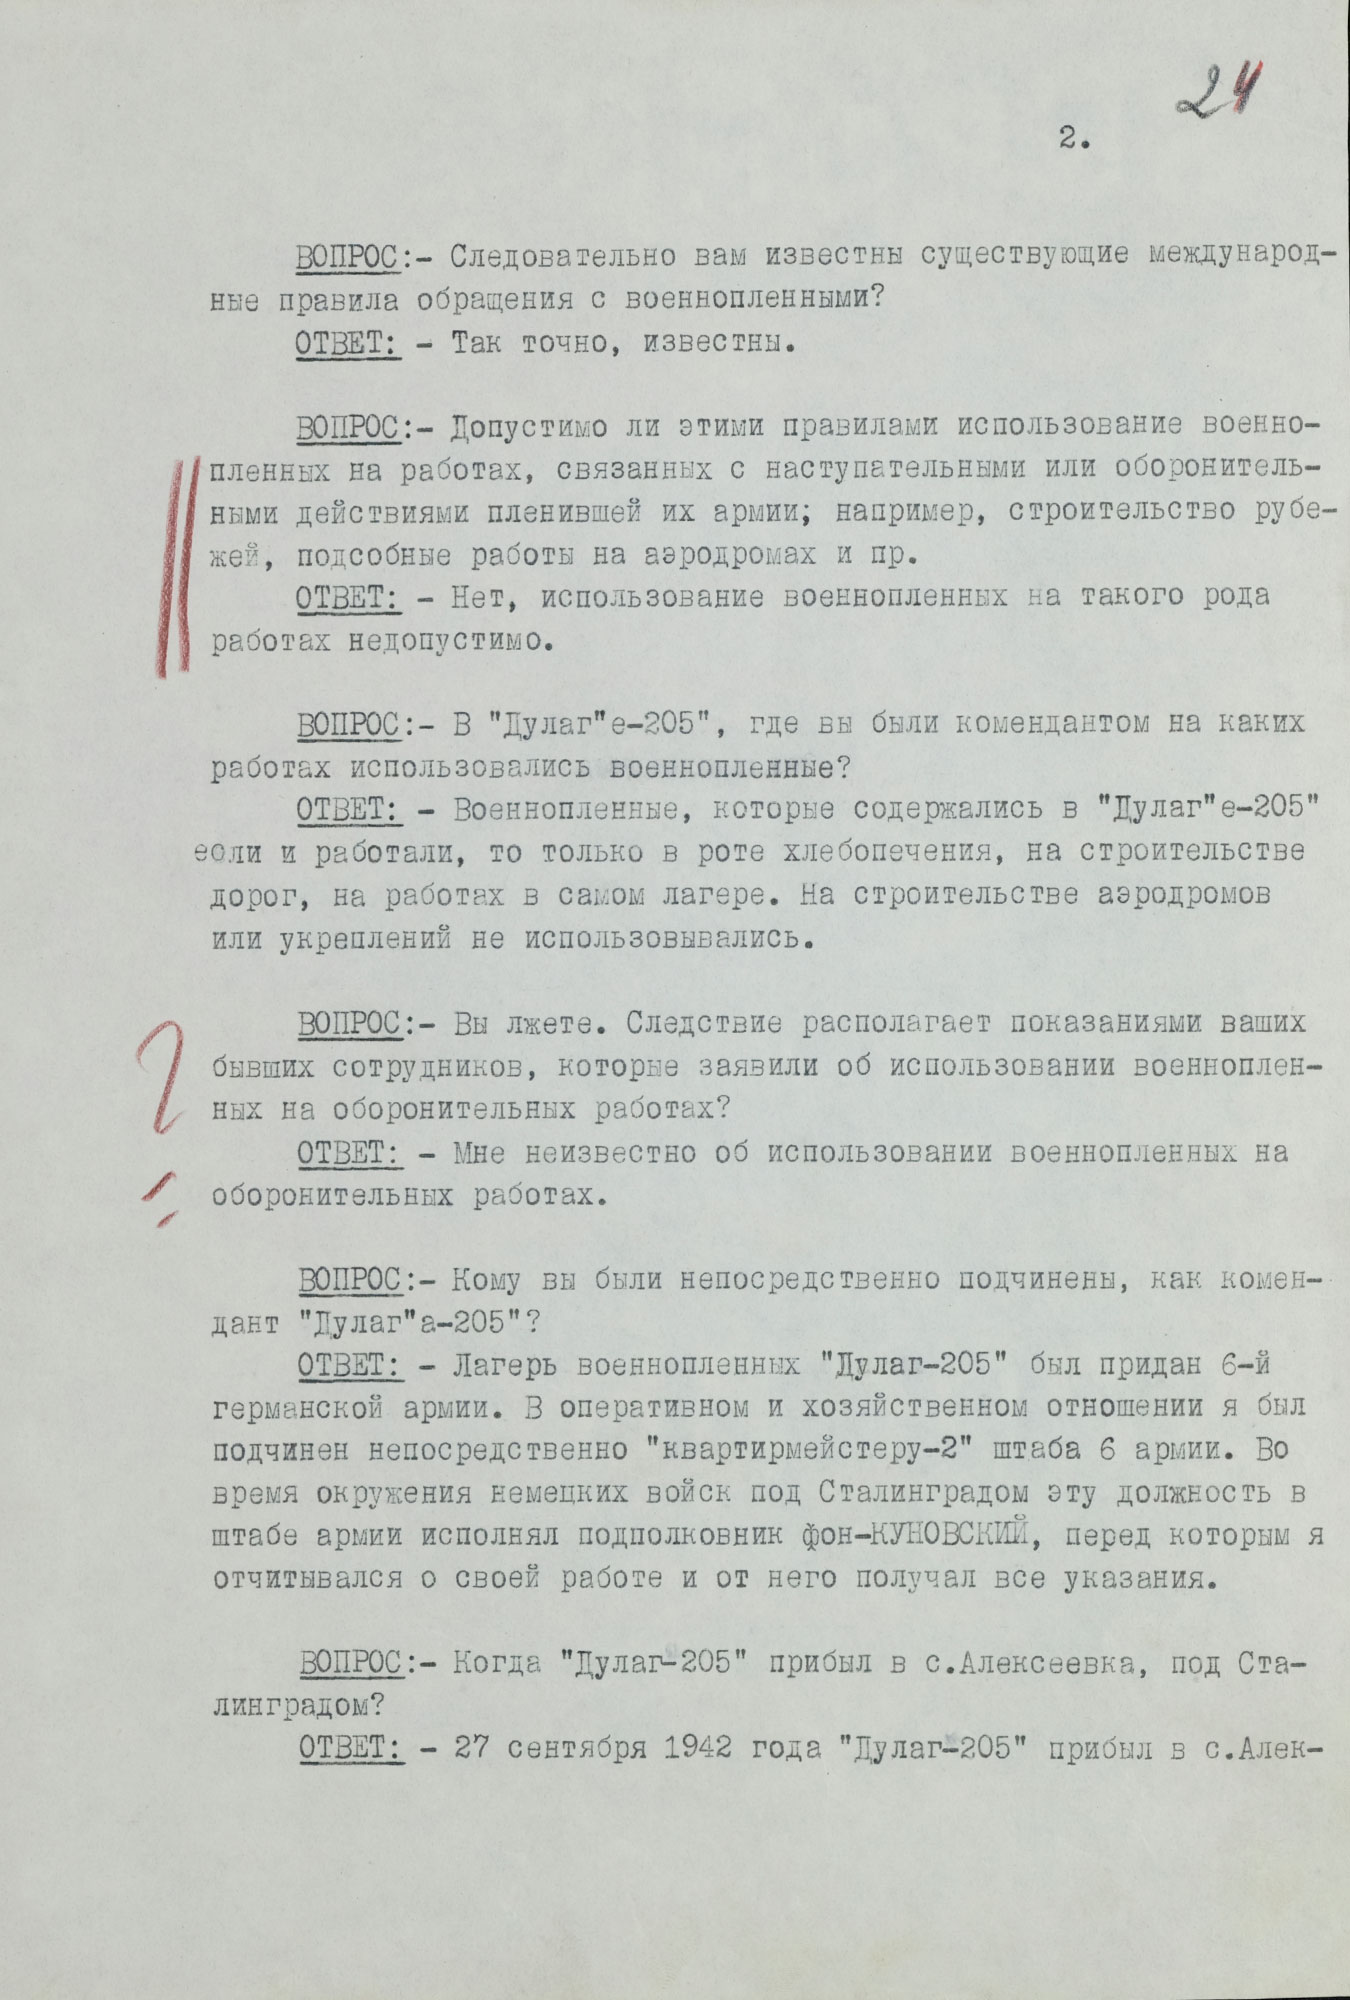 Протокол допроса военнопленного полковника германской армии КЕРПЕРТА Рудольфа, коменданта «Дулаг-205». 23 июня 1943 г. Страница 2